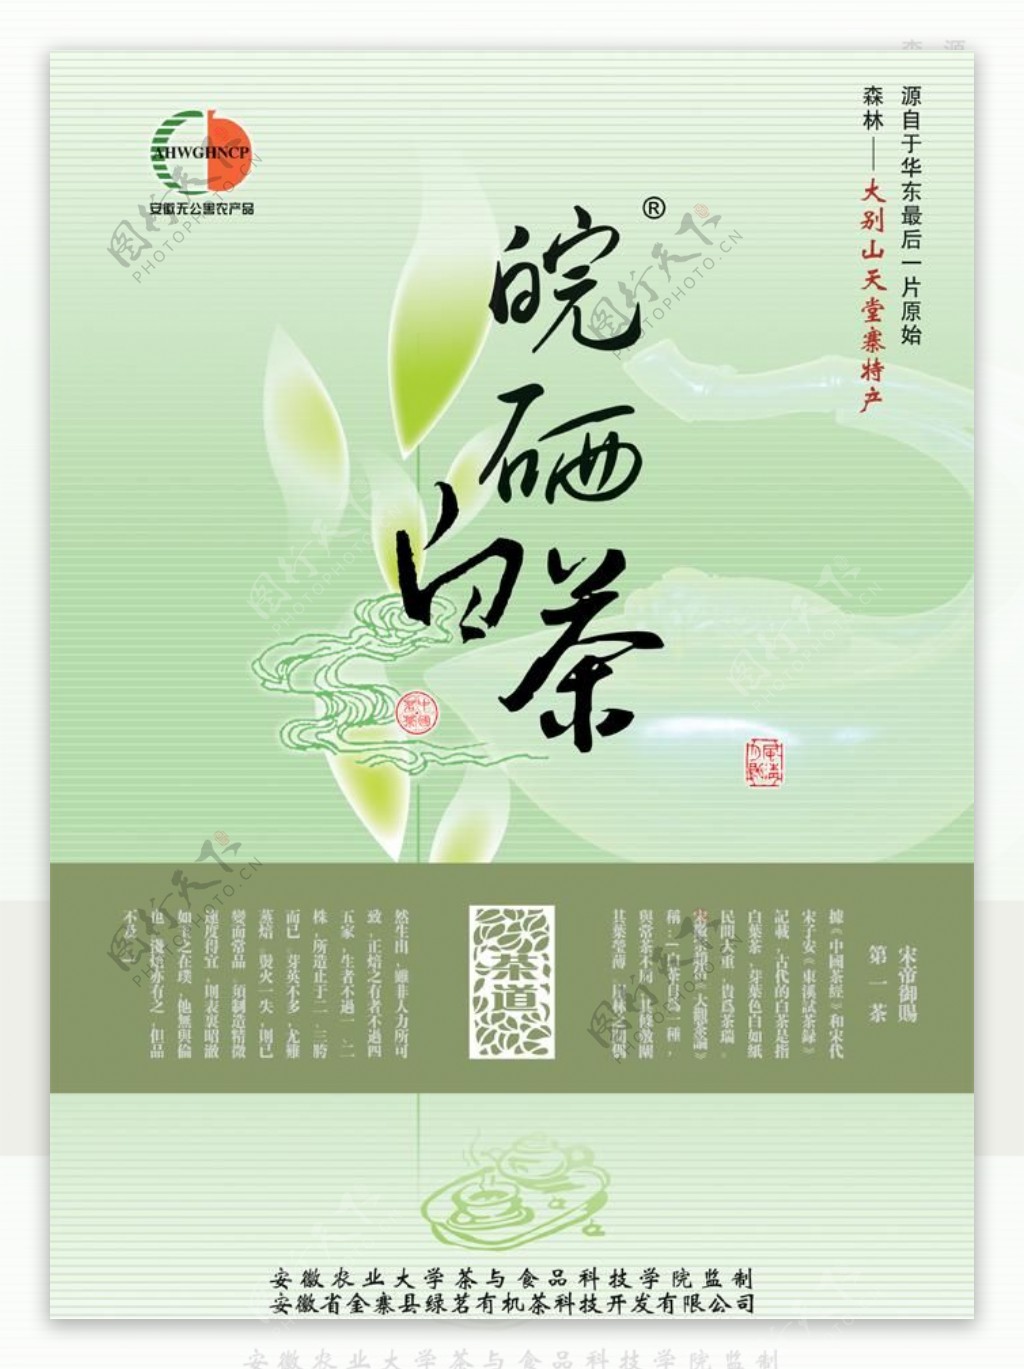 皖西白茶茶叶广告PSD素材